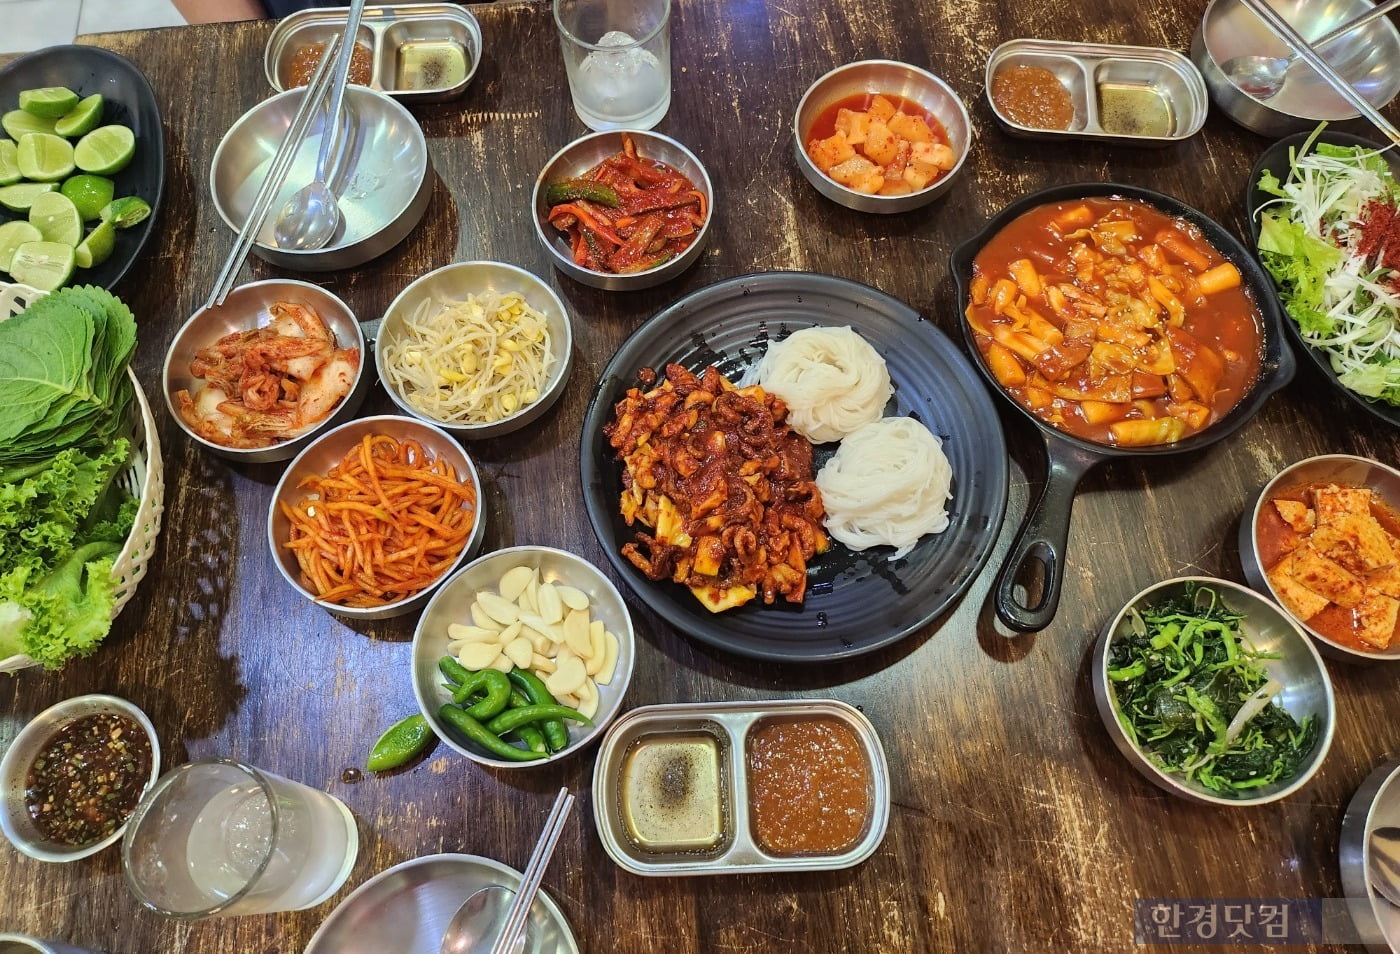 태국 방콕 한식당 '수라간'에서 선보이는 메뉴. 다양한 밑반찬이 한국 식당과 흡사하다. (사진=이미나 기자)